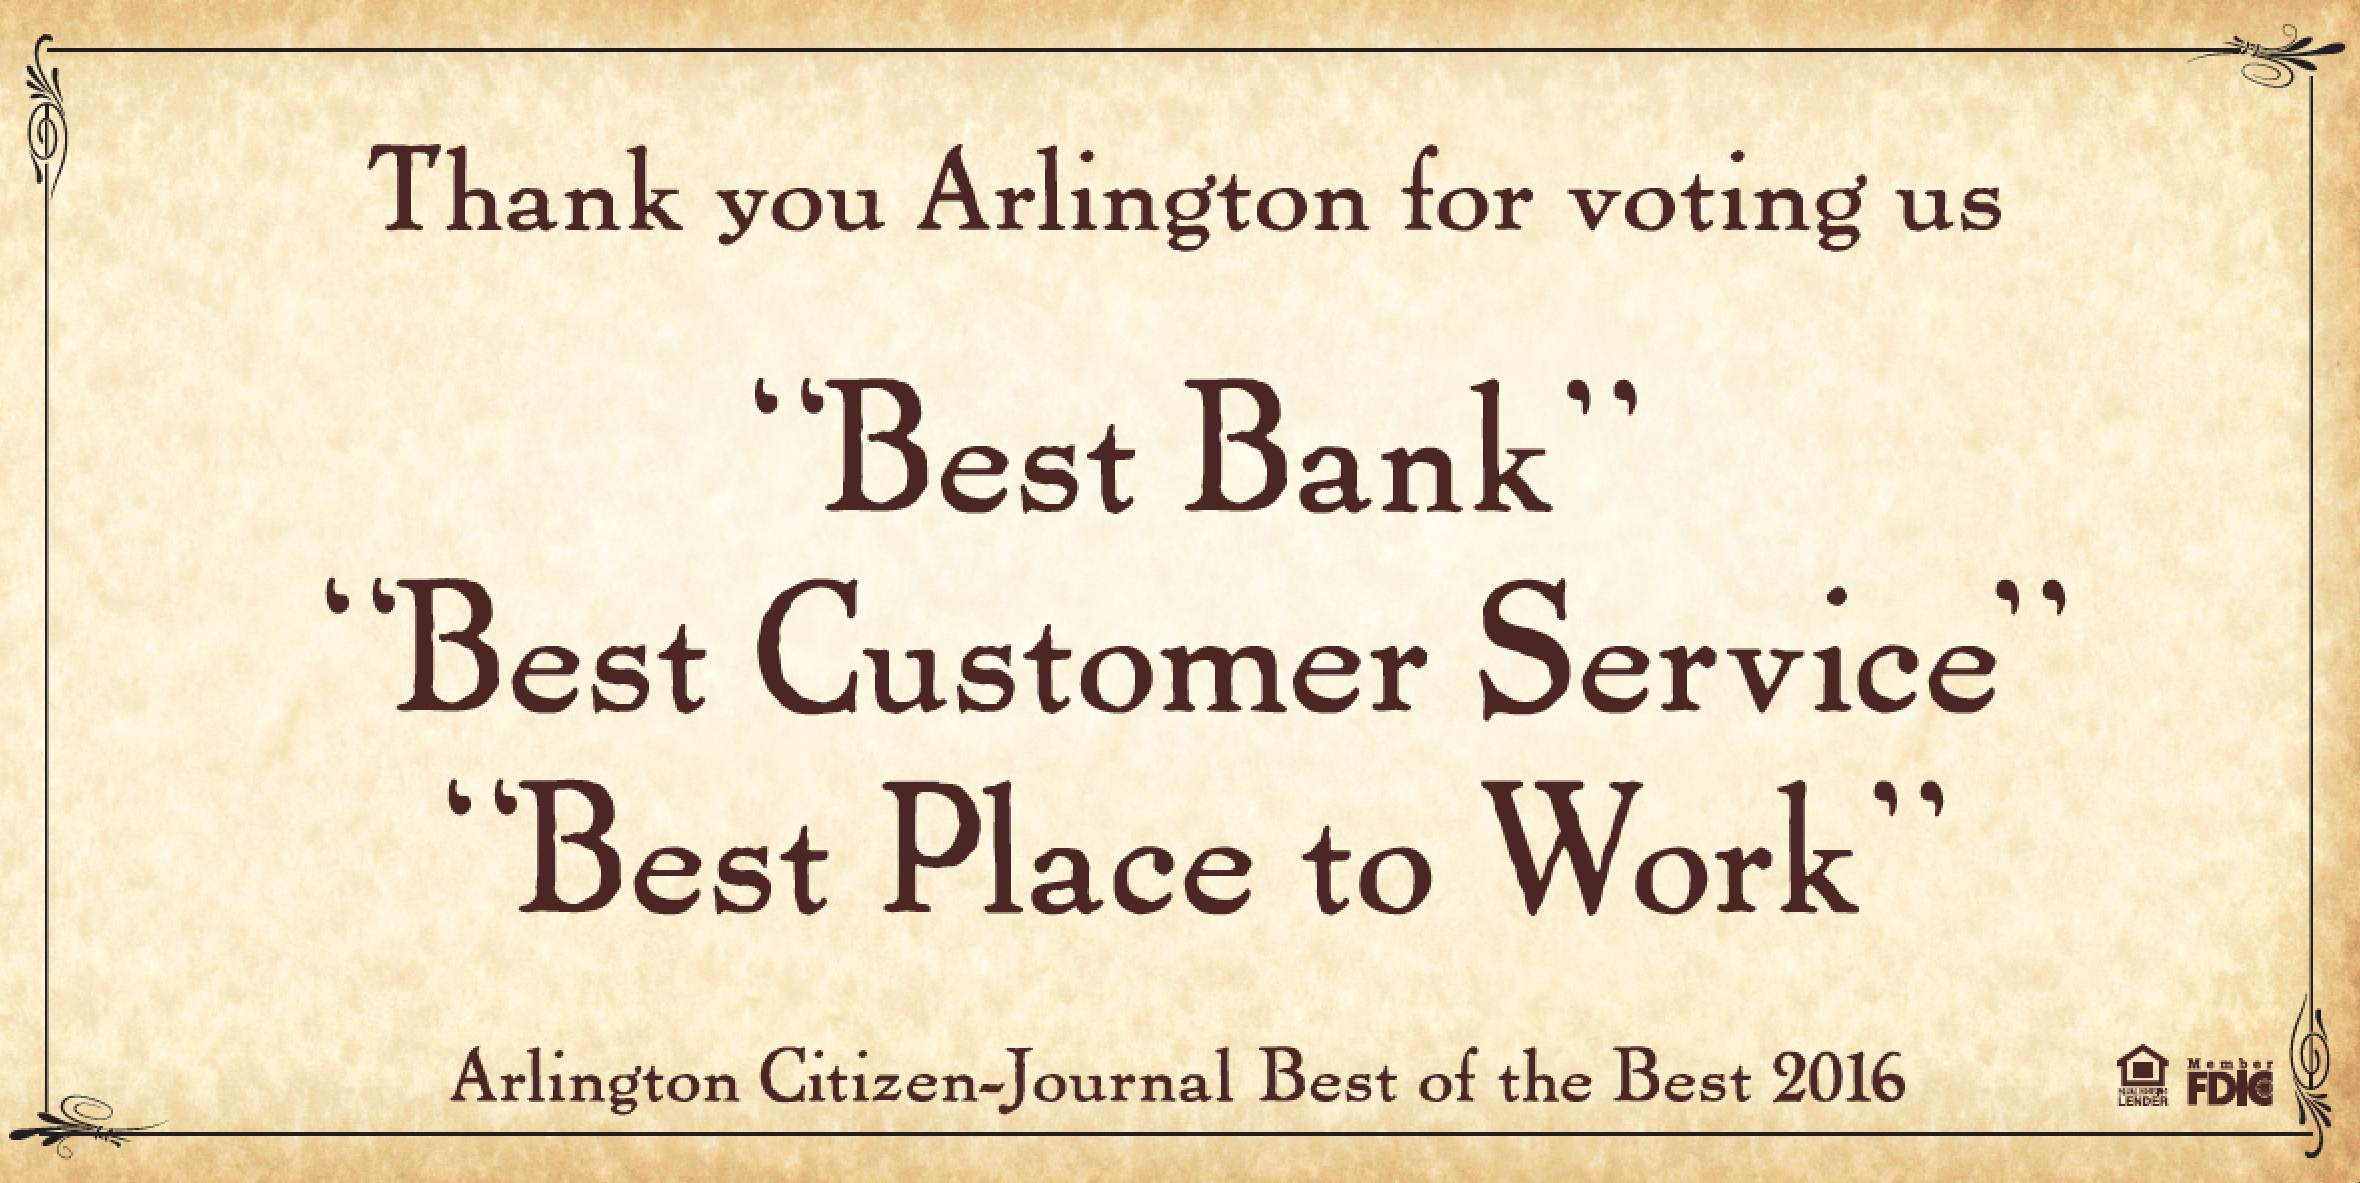 Arlington Citizen-Journal Best of the Best 2016